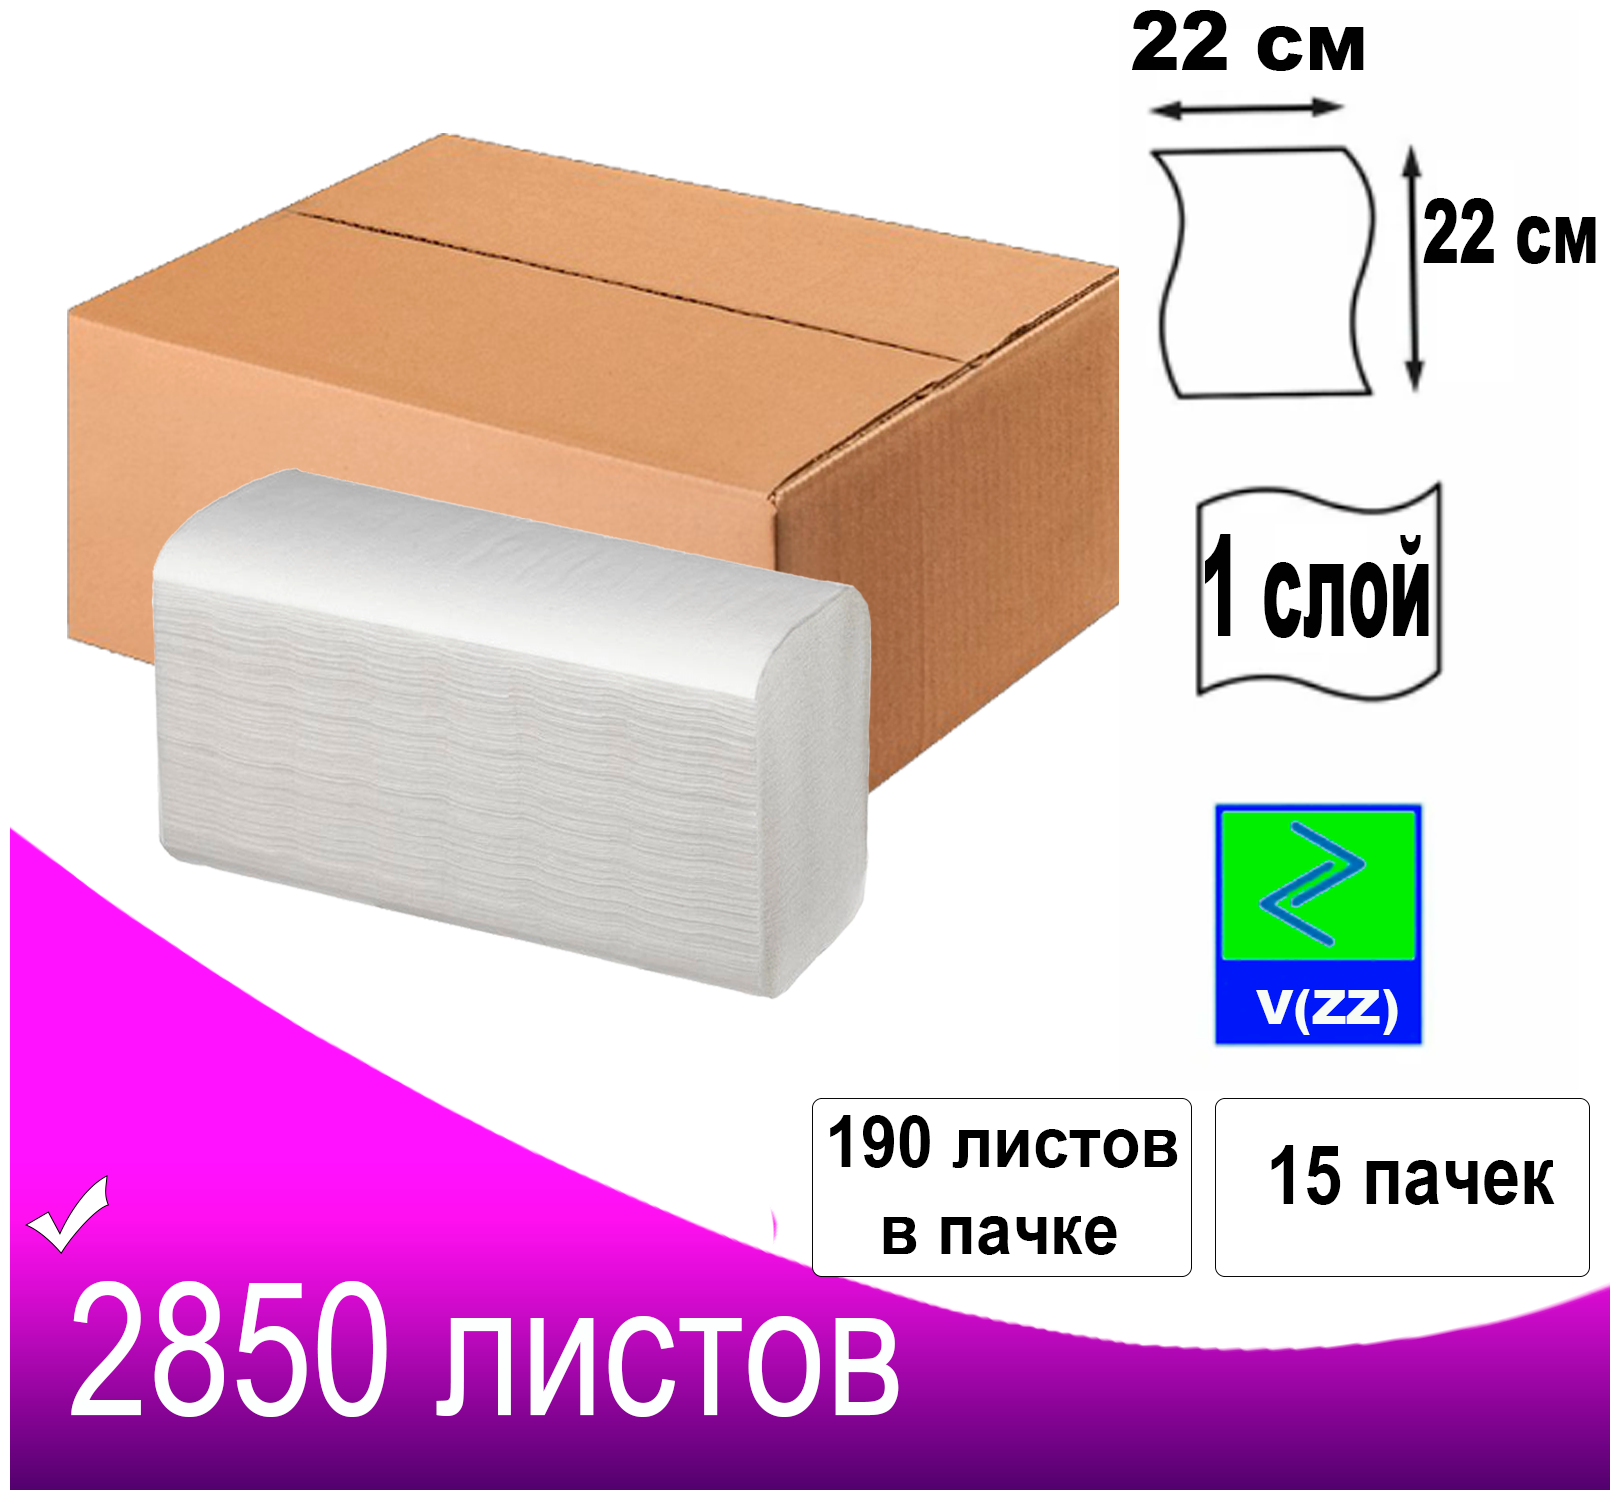 Полотенца бумажные листовые V(ZZ) сложения белые целлюлоза 2850 листов 1-слойные/15 пачек в коробке/в пачке 190 листов/д/диспенсера Н3/размер 22х22 см